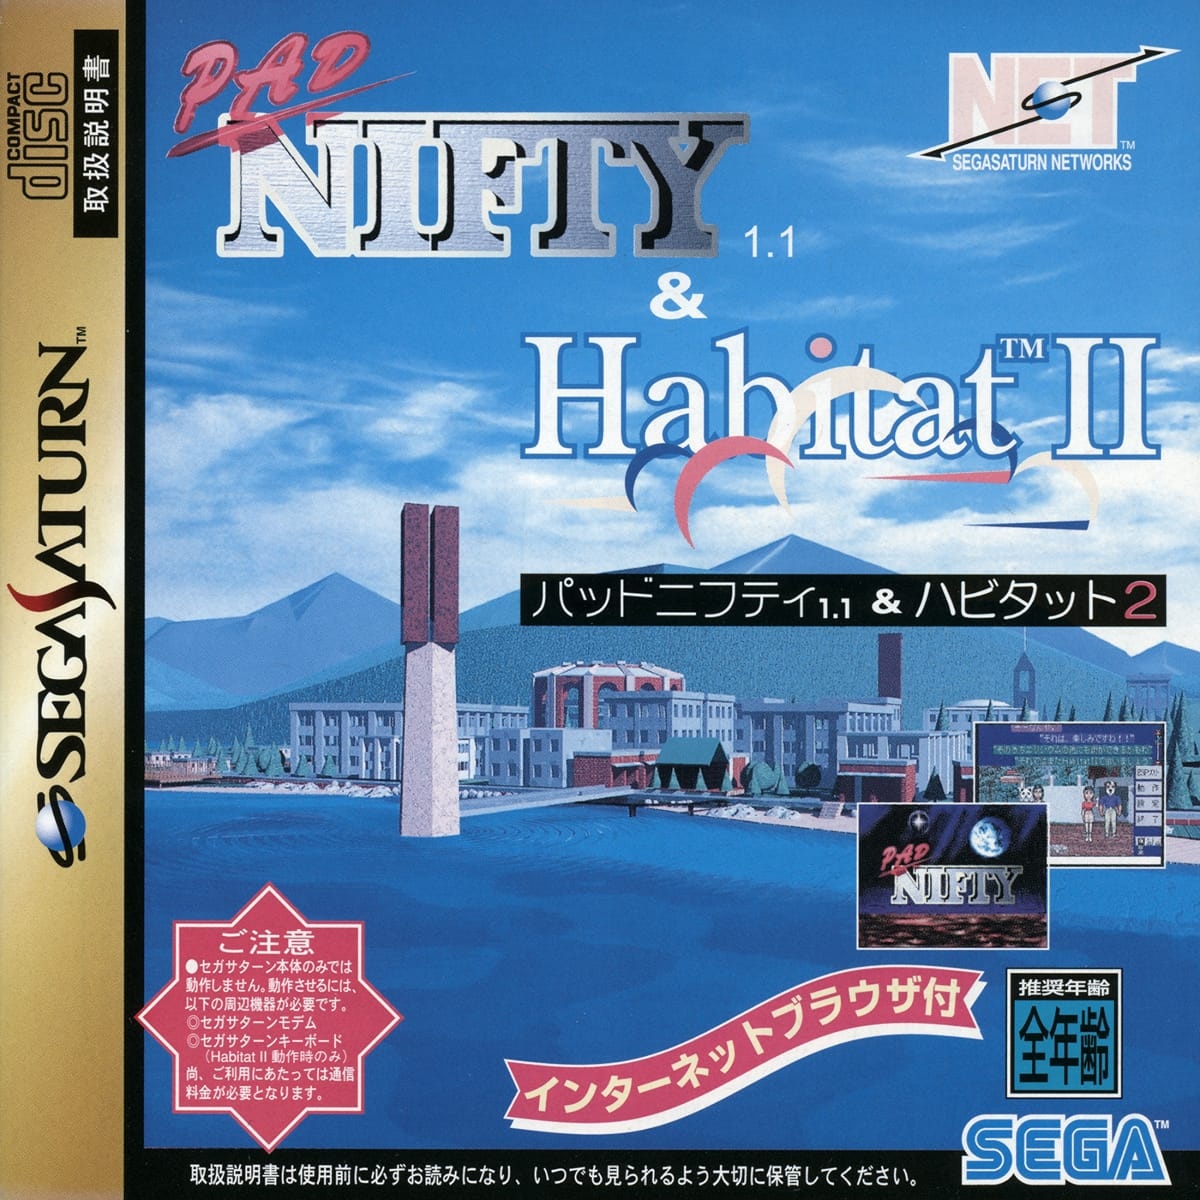 Capa do jogo Pad Nifty 1.1 & Habitat II